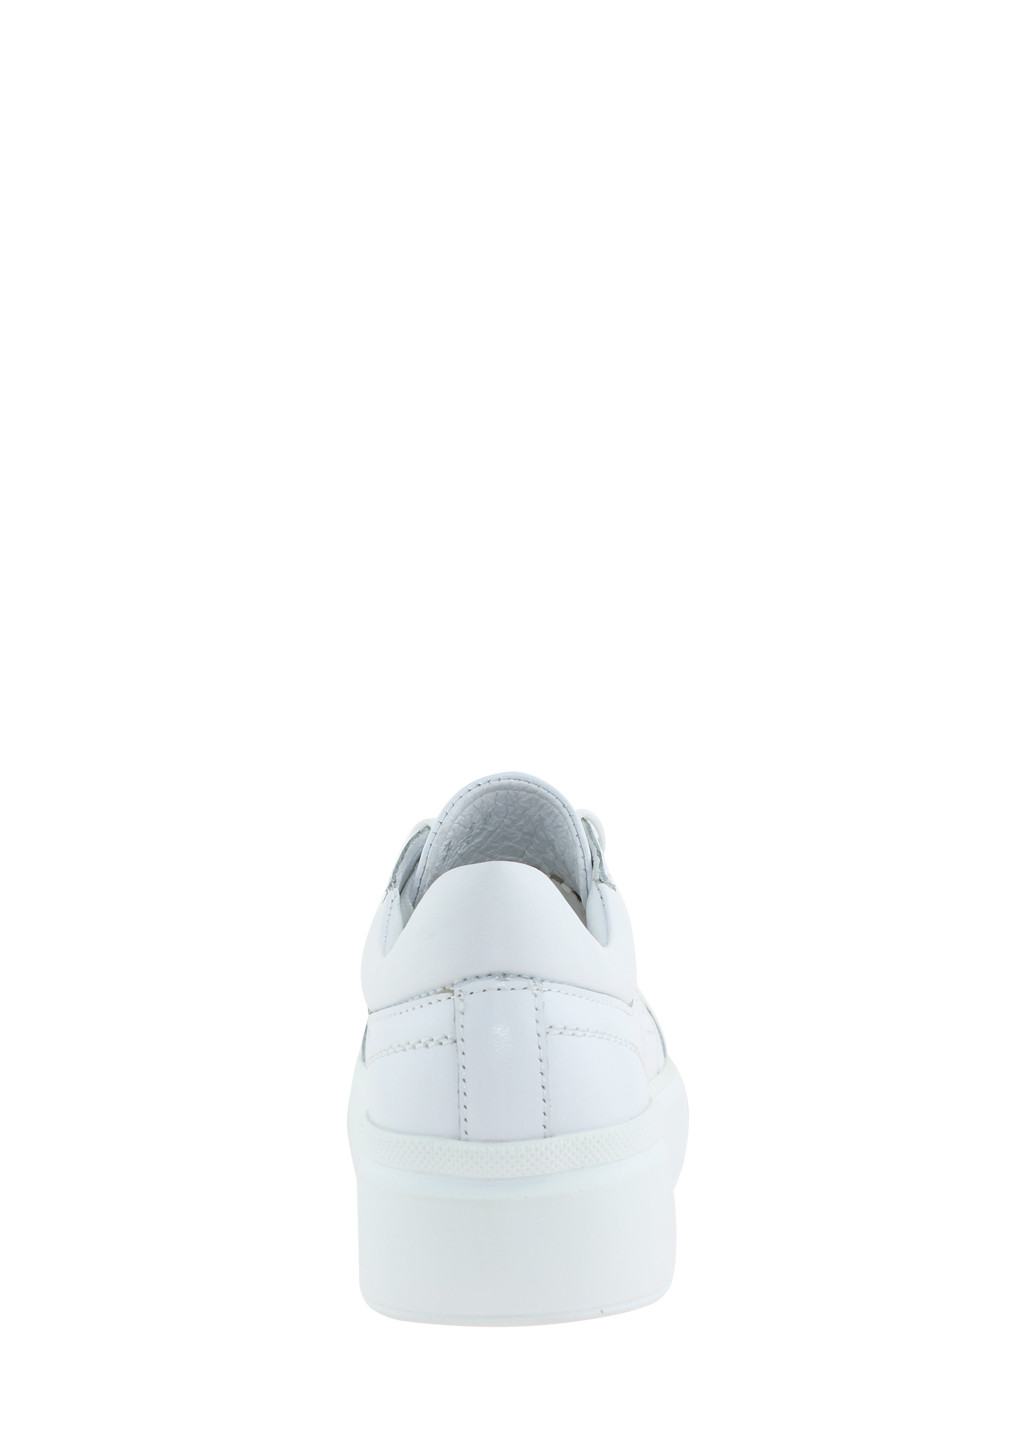 Білі осінні кросівки rs - 275 білий Sothby's